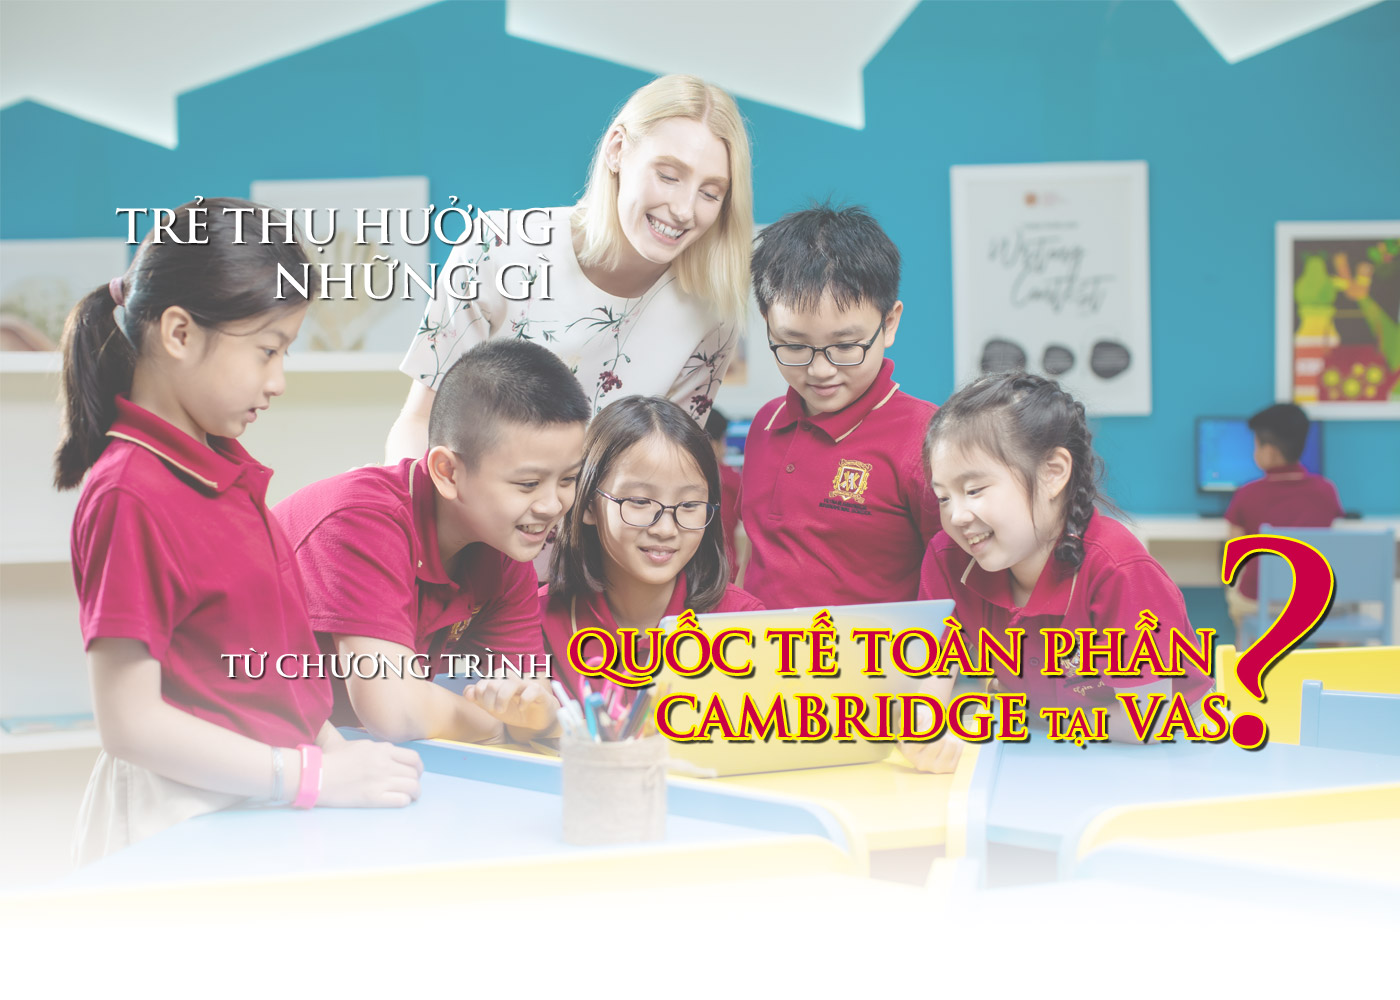 Trẻ thụ hưởng những gì từ chương trình quốc tế toàn phần Cambridge tại VAS? - Ảnh 1